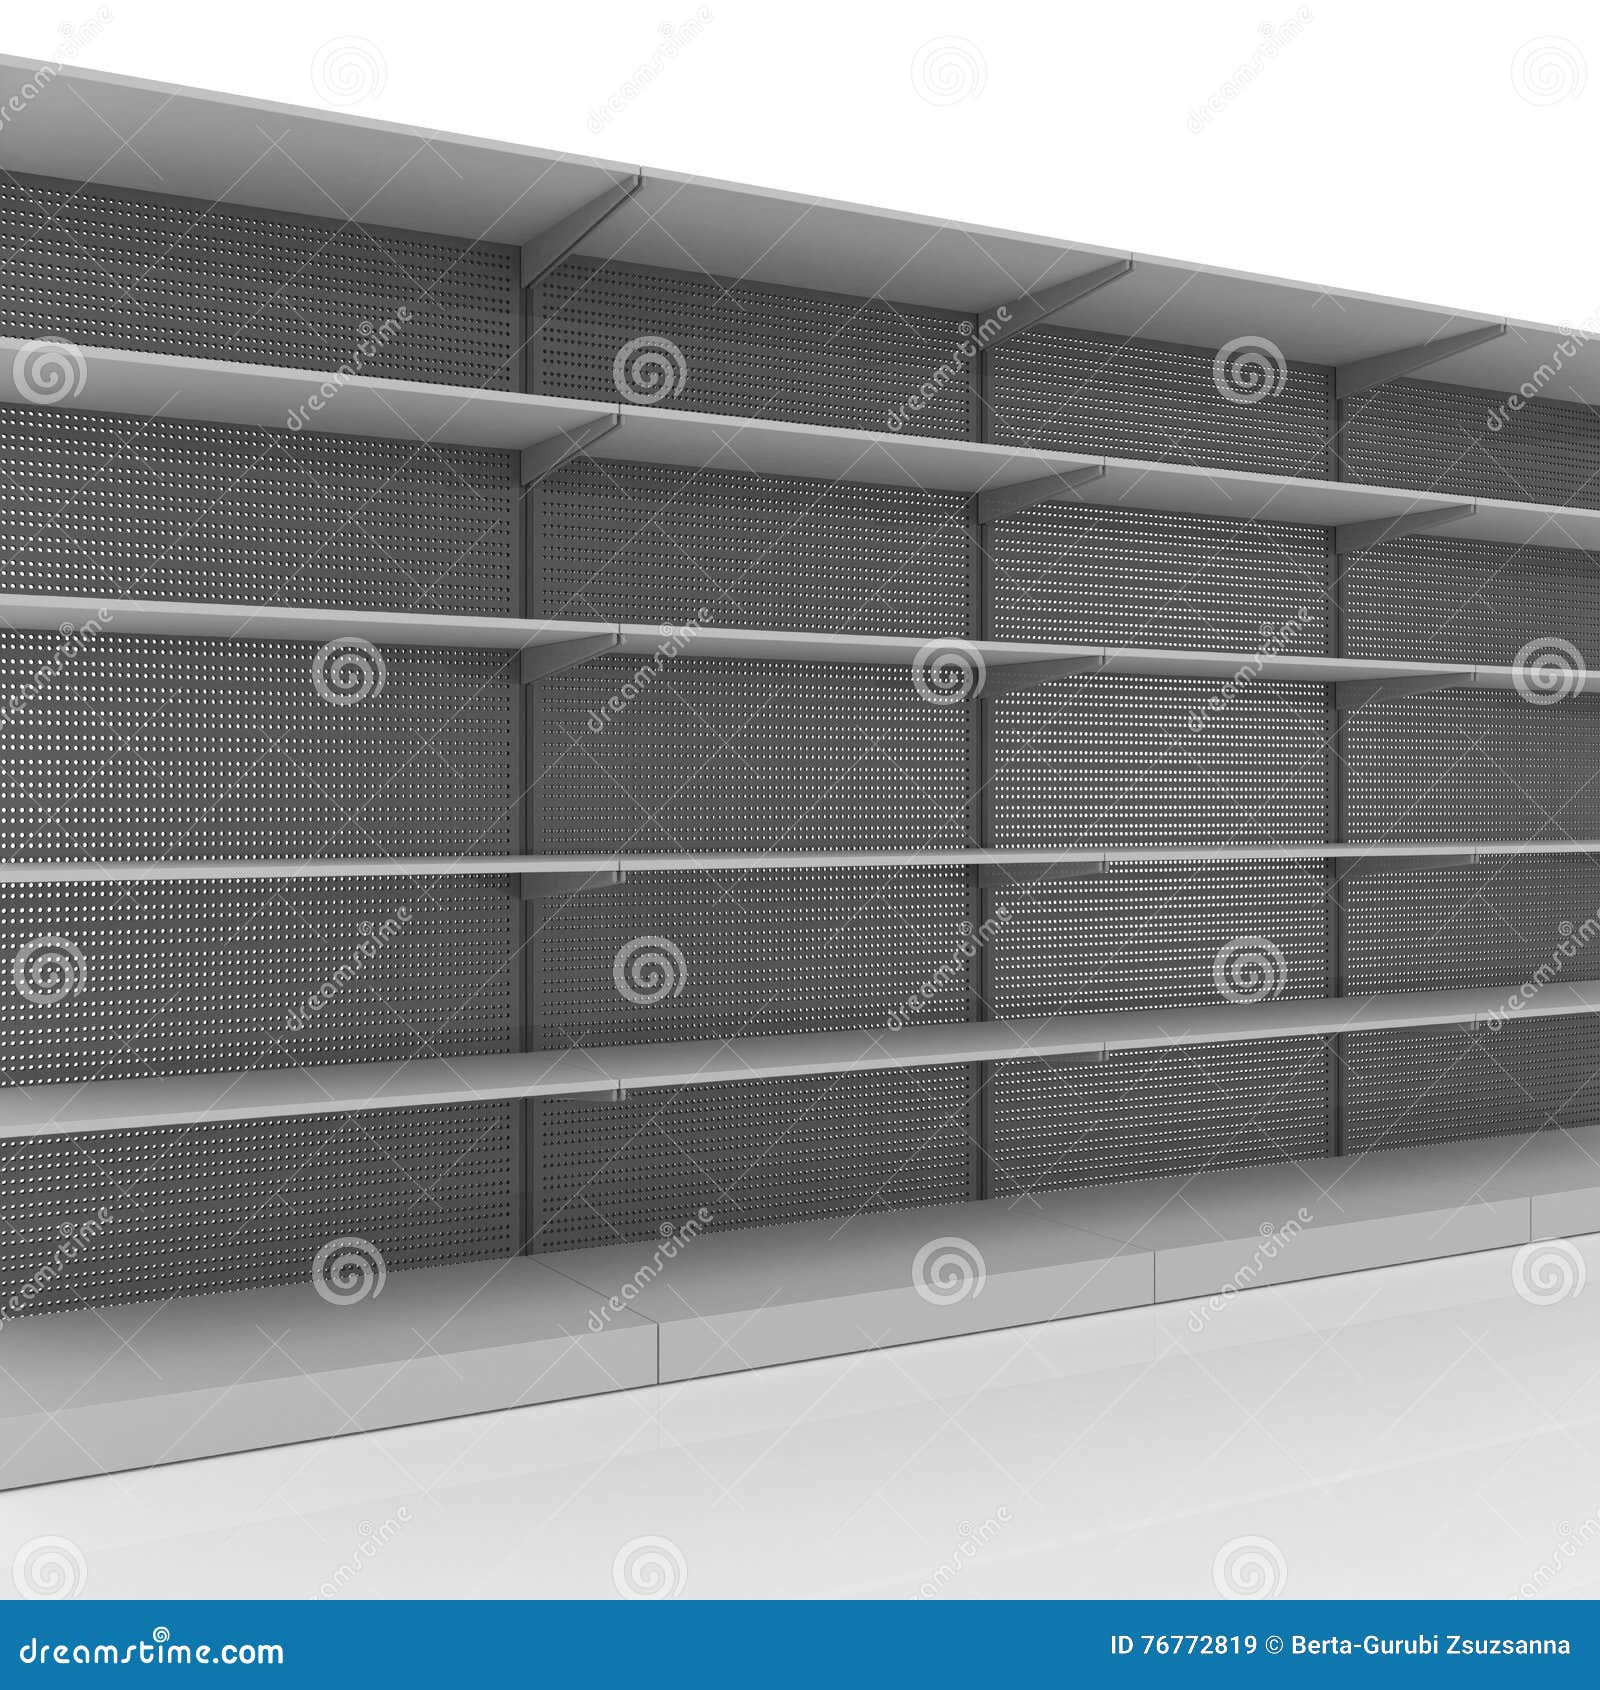 Download Instore Display - Shelf Mockup Stock Illustration ...